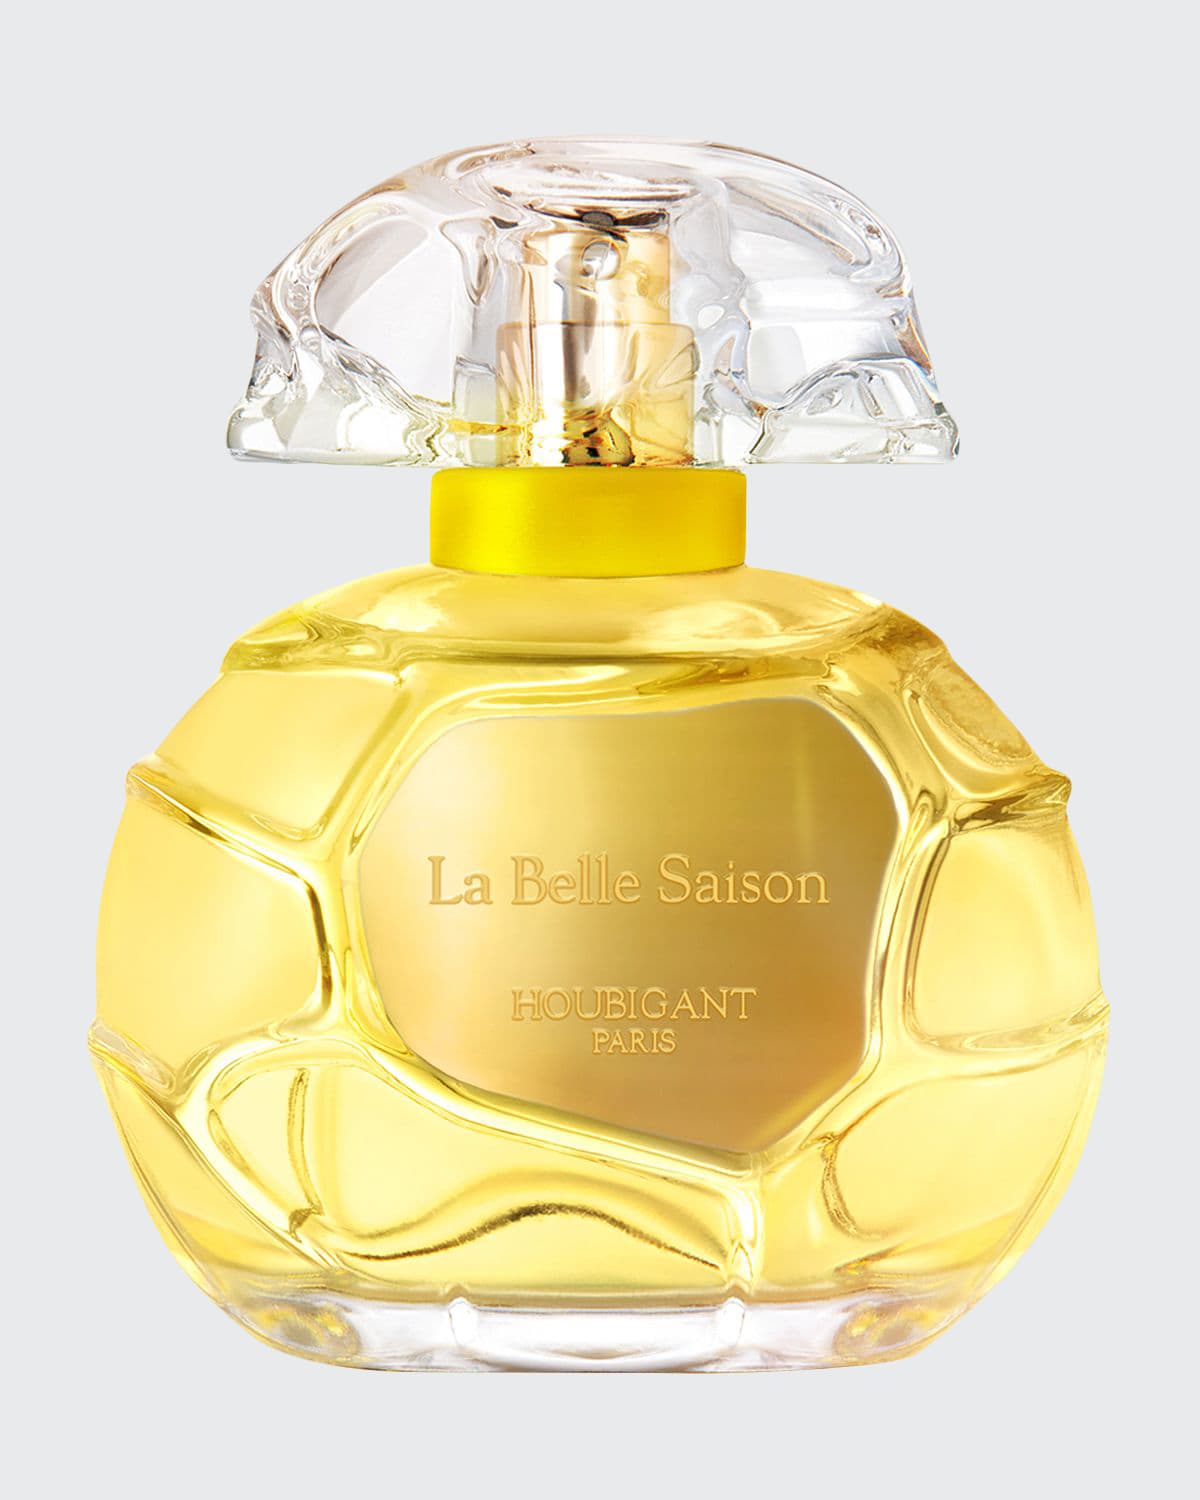 Houbigant Paris La Belle Saison Eau de Parfum Collection Privee